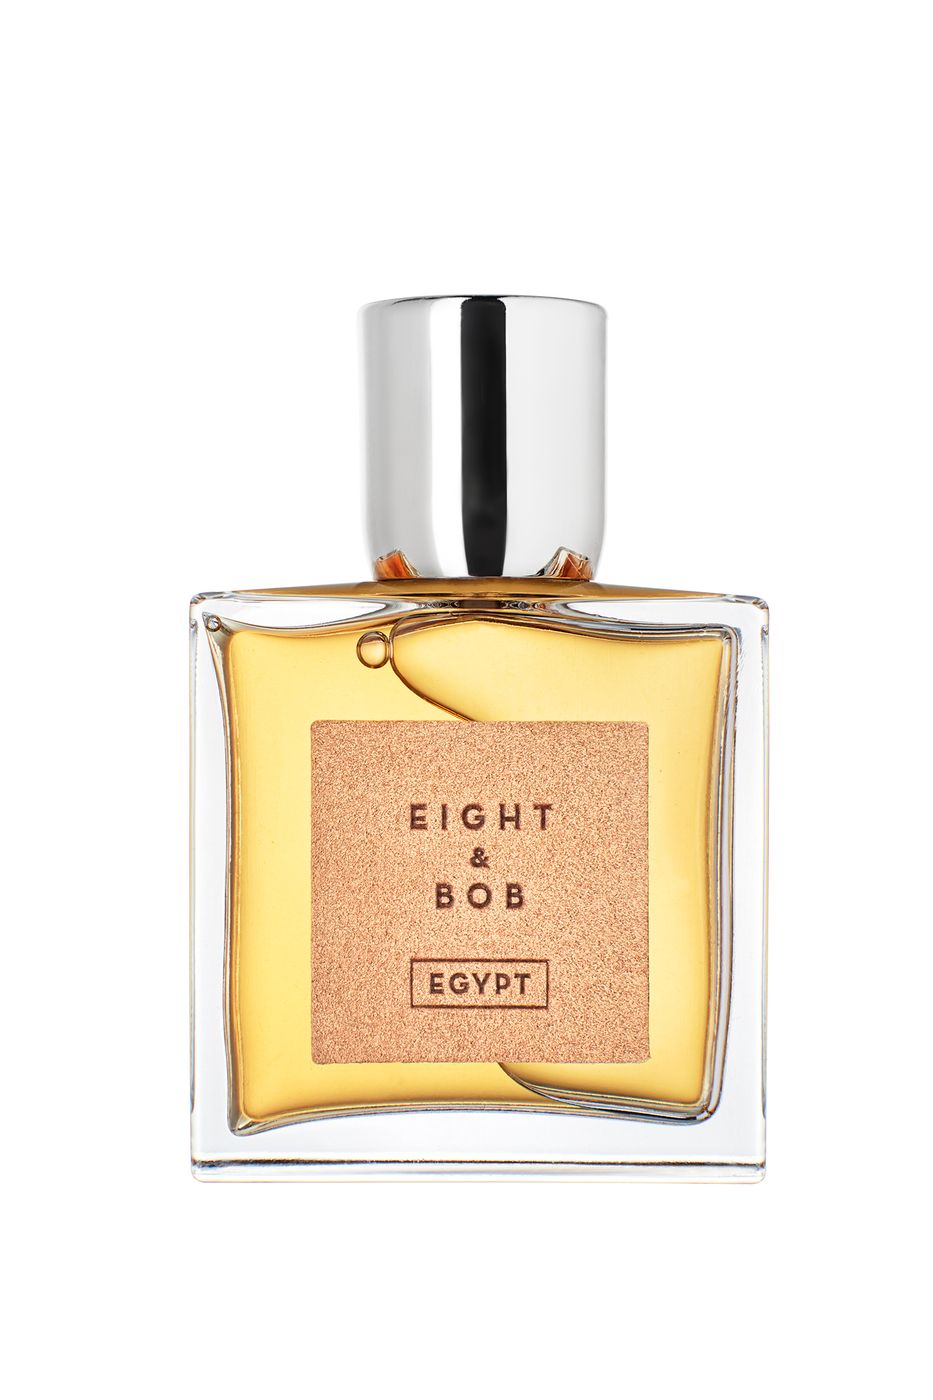 EIGHT & BOB PERFUM EGYPT EDP 100 ML Perfum Egypt Edp 100 mlEight & Bob - Egypt - Eau de Parfum.Un profumo ispirato all'antica cultura egizia.Il profumo dell'EGITTO offre un'esperienza olfattiva che ti porterà in un viaggio nel tempo. Passeggia nel soleggi